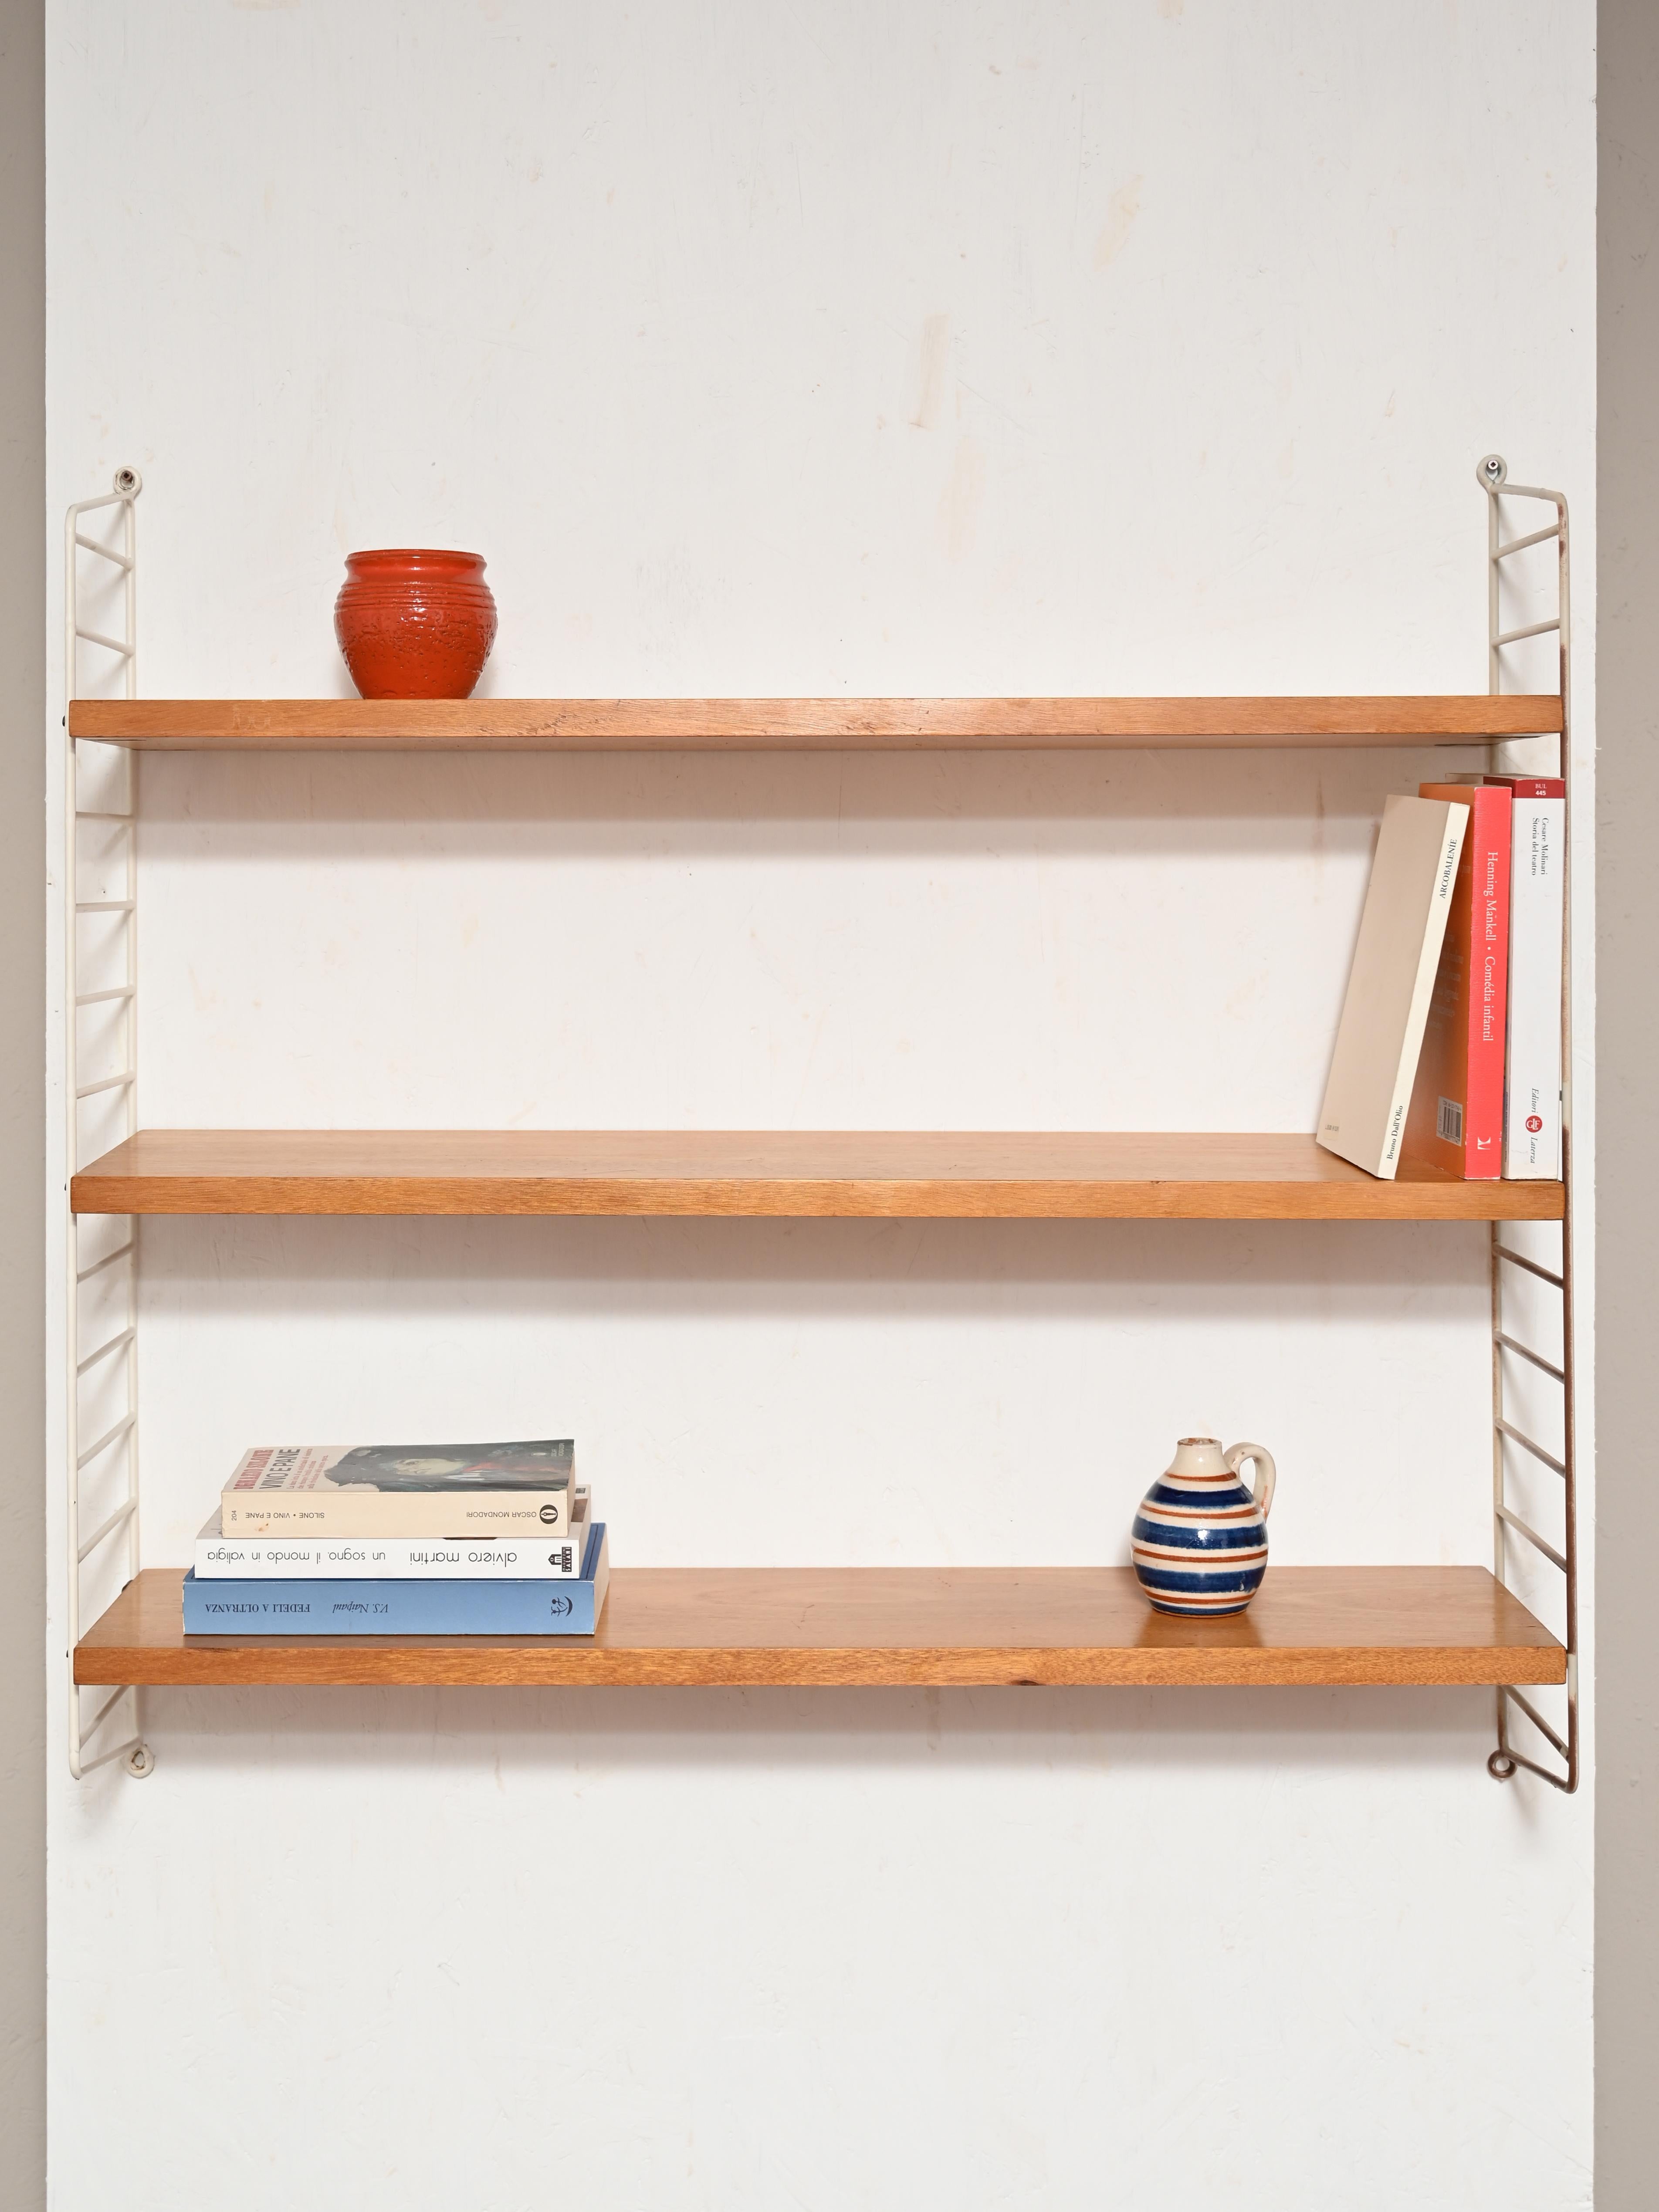 Scandinavian shelf system called 